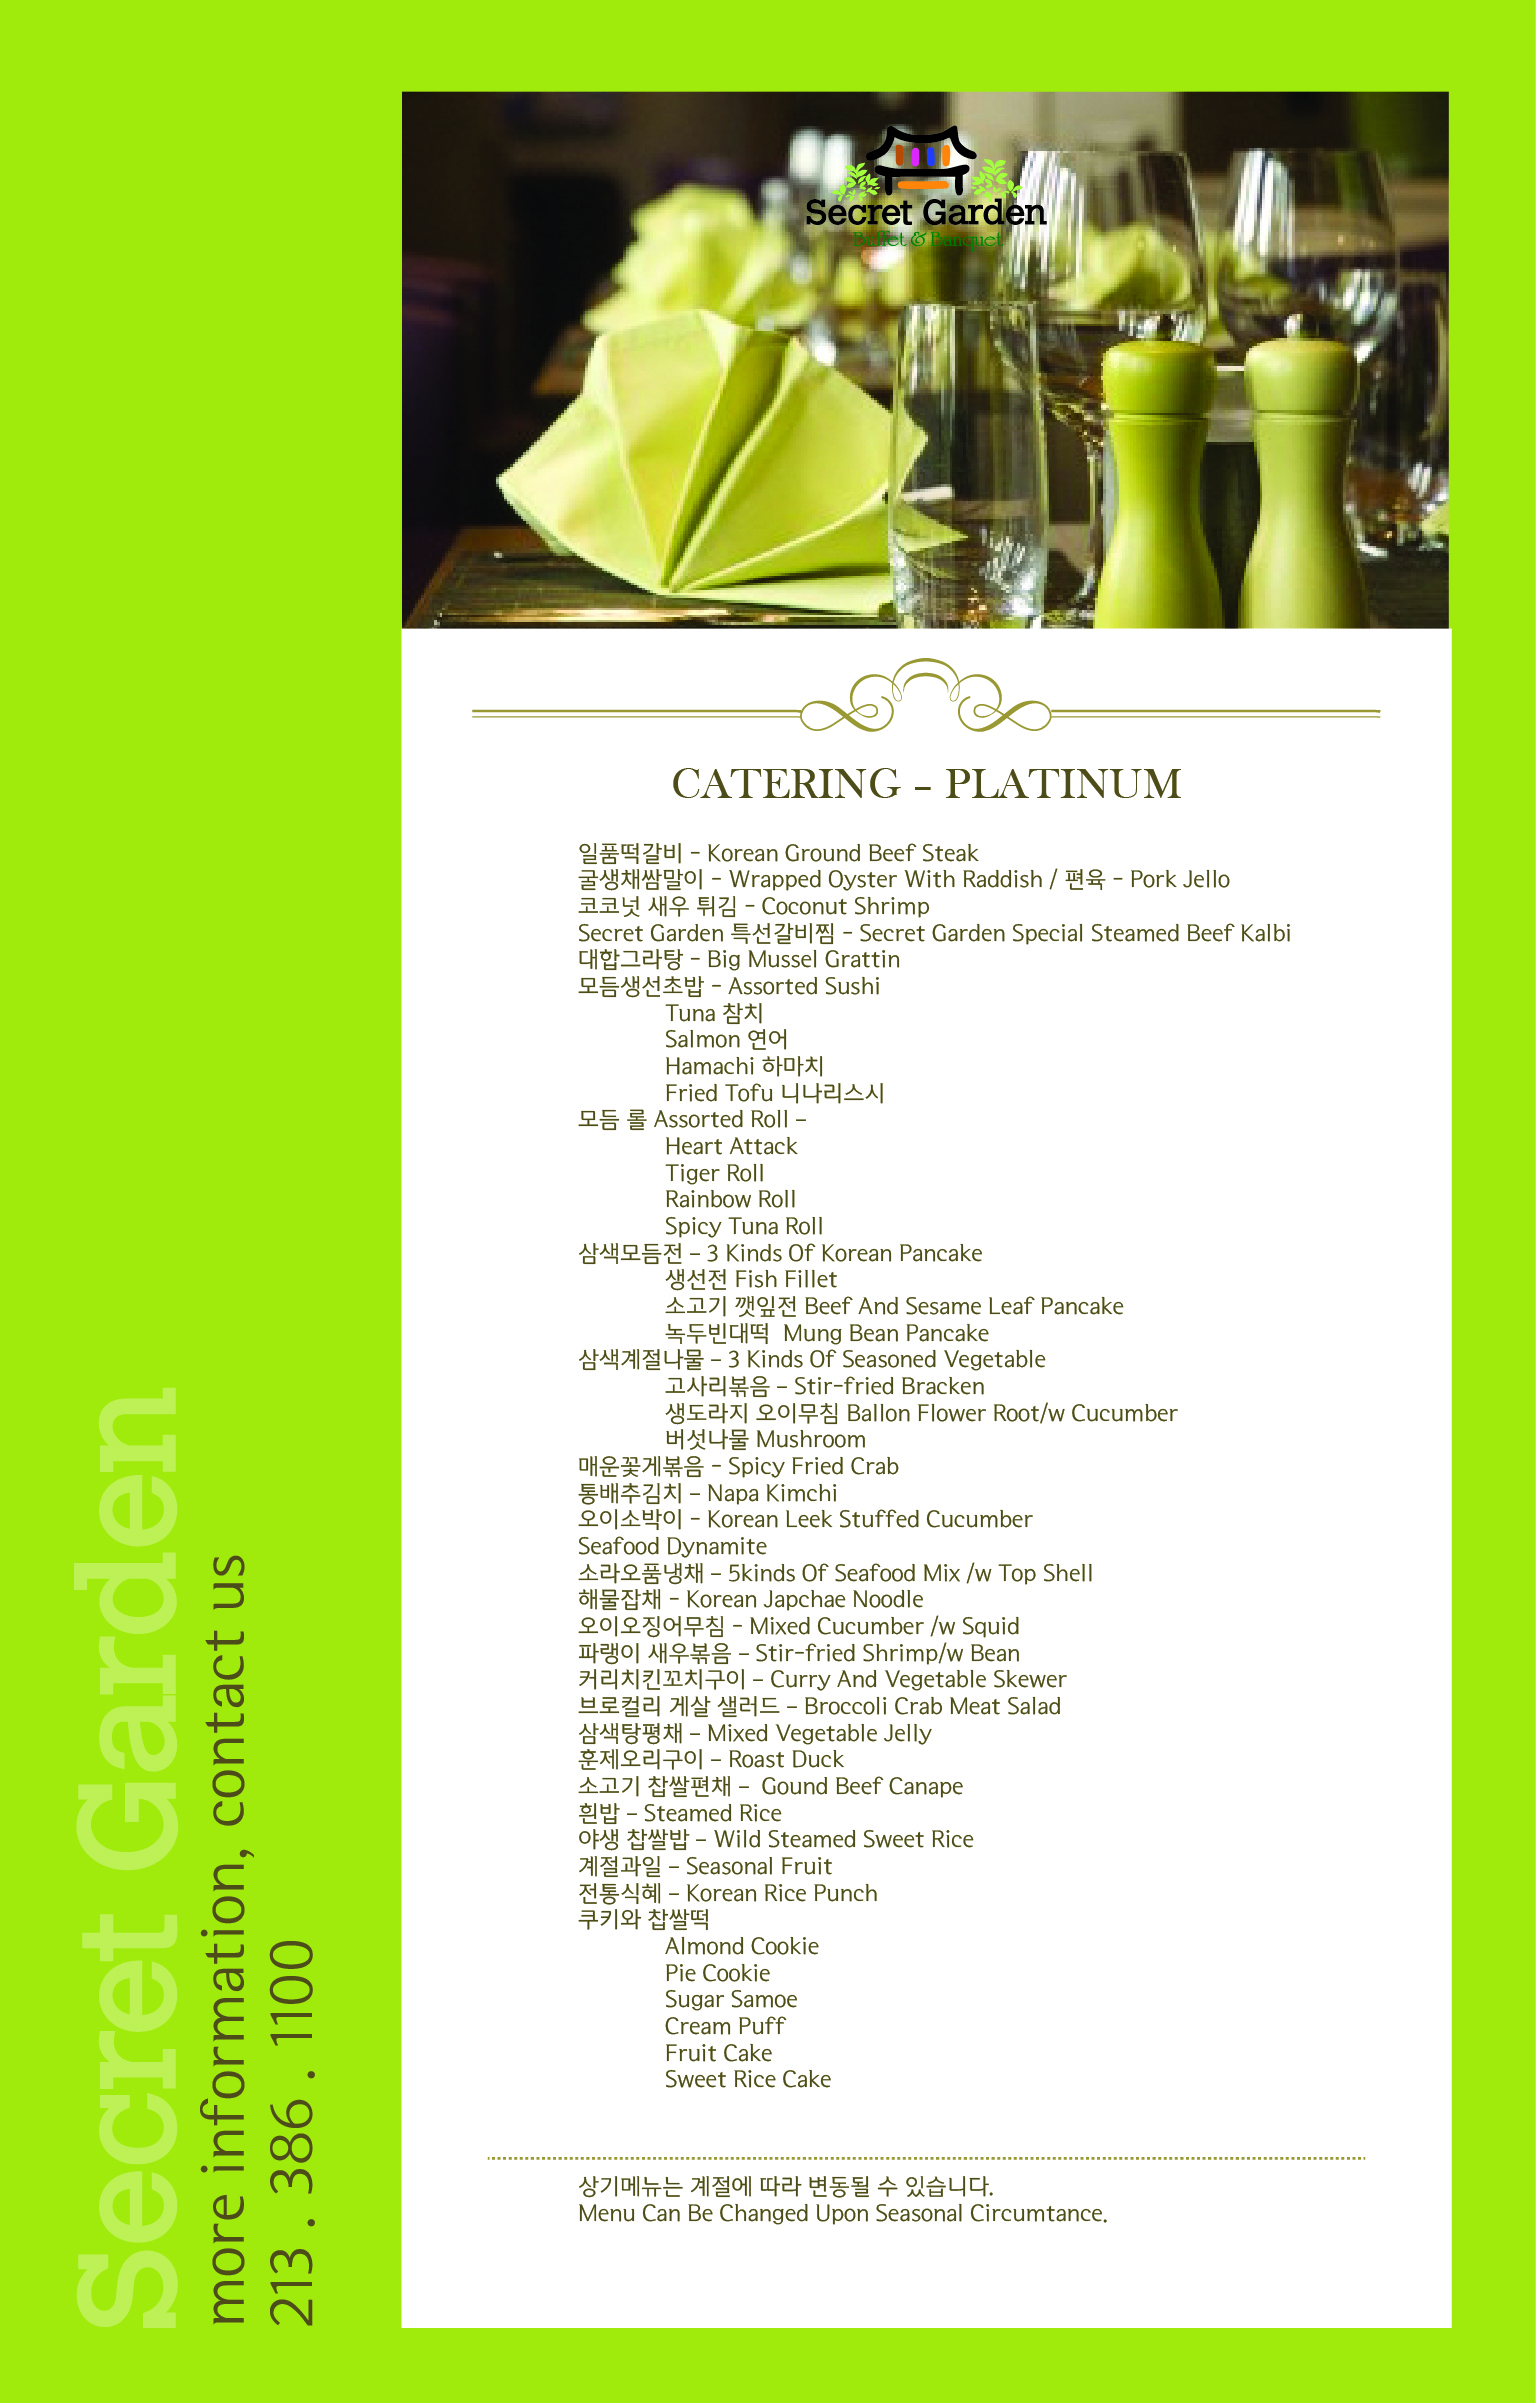 secret garden menu-CATERING PLATINUM